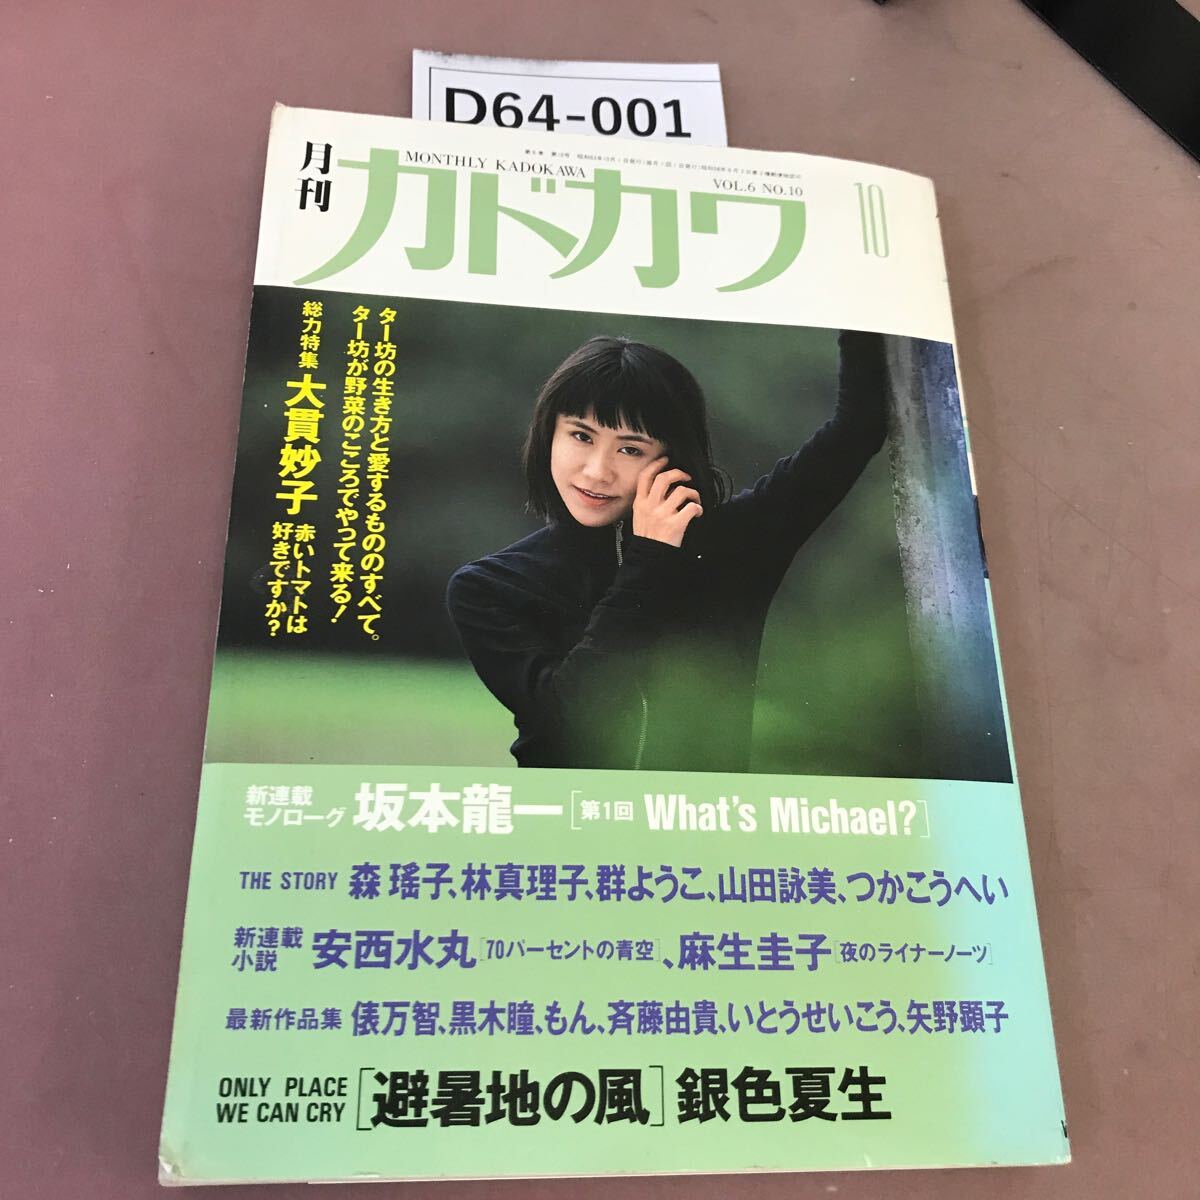 D64-001 Monthly Kadokawa 10 общий сила специальный выпуск Oonuki Taeko Showa 63 год 10 месяц 1 день выпуск 